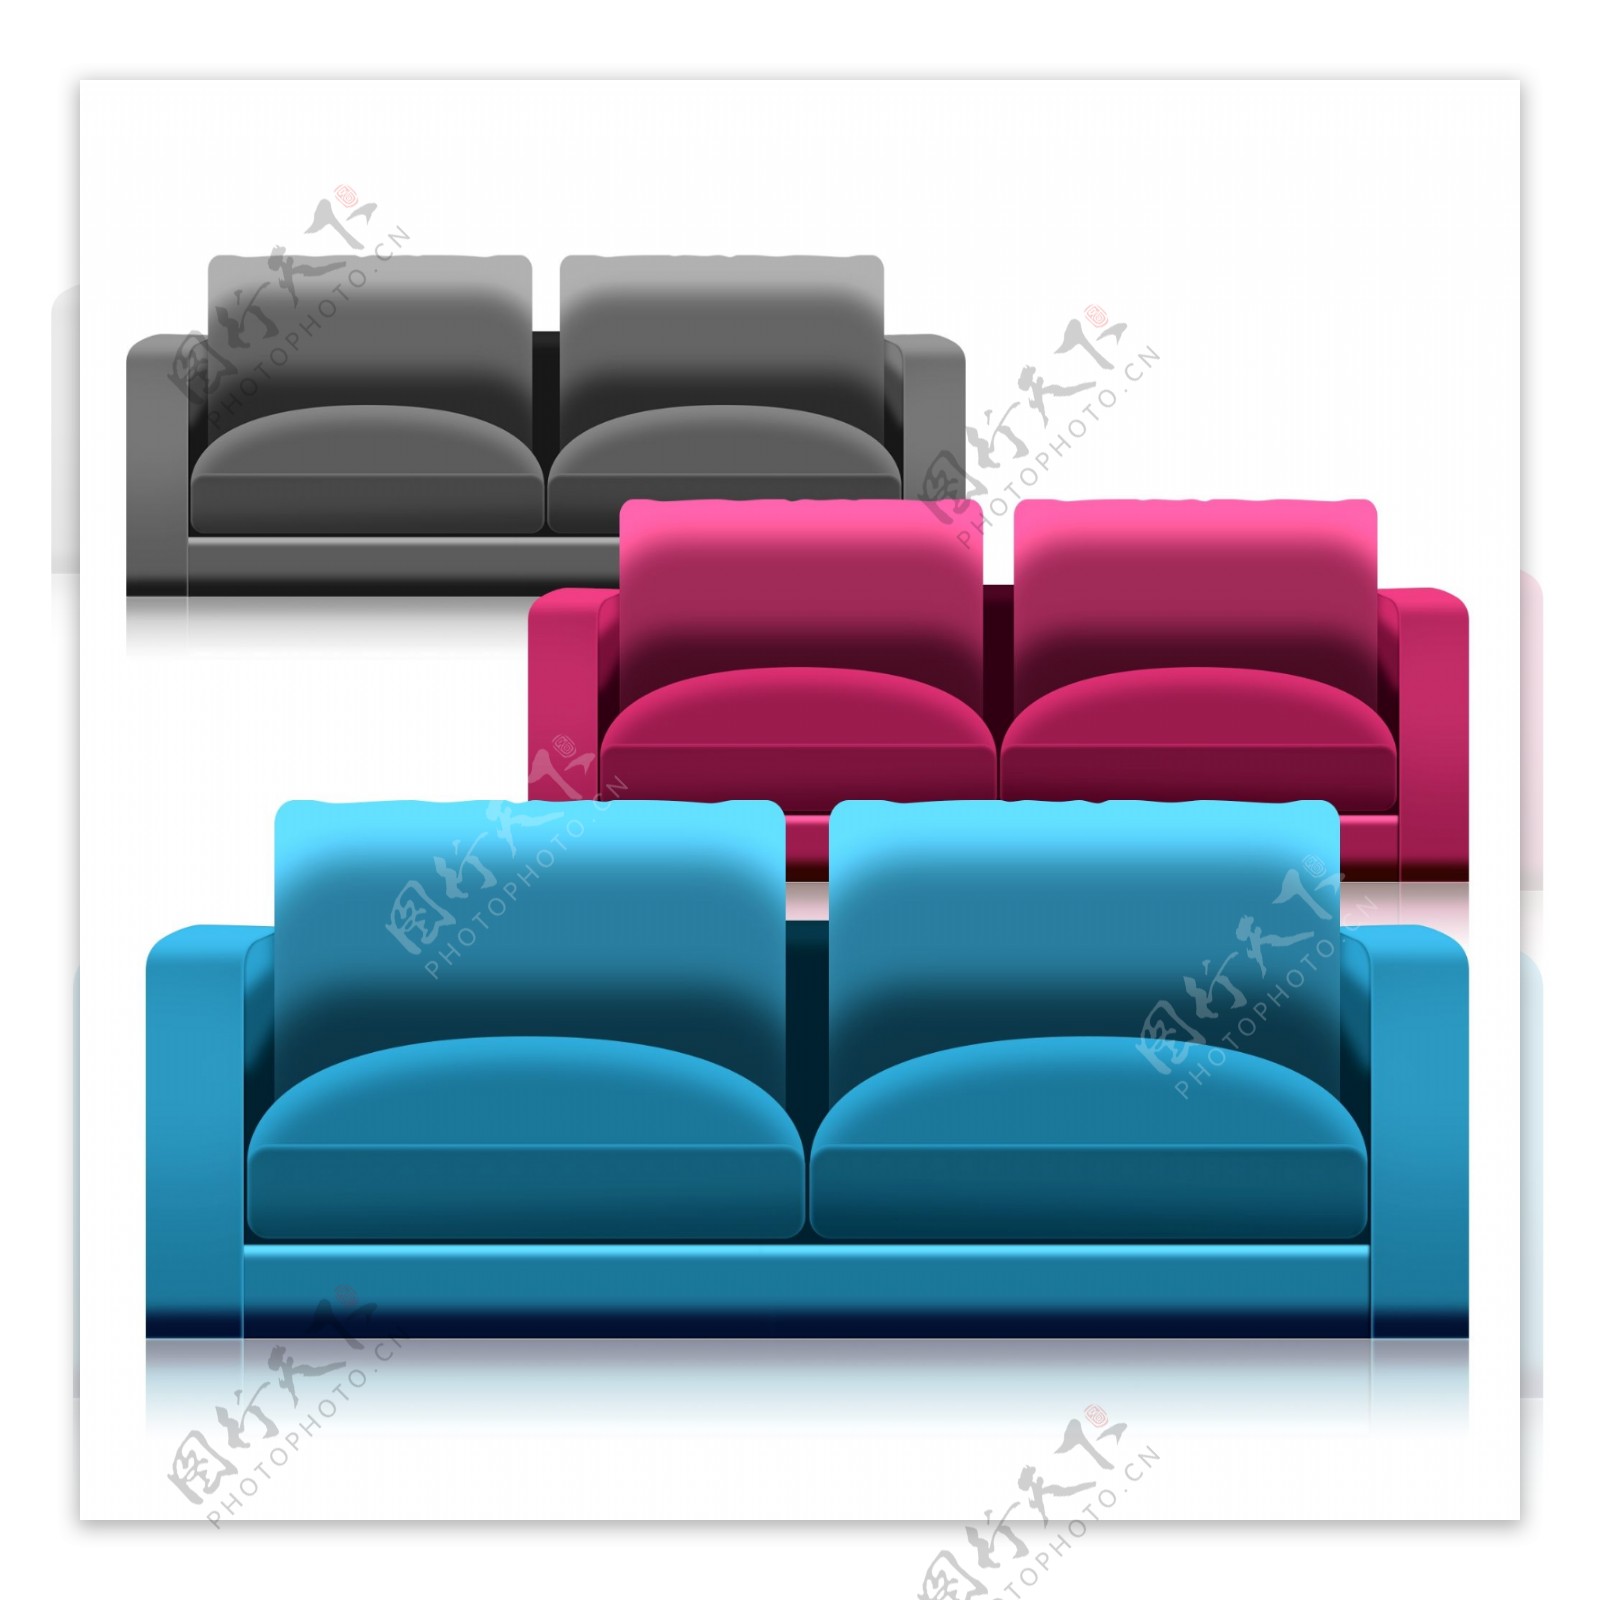 生活用品沙发效果图案可商用素材